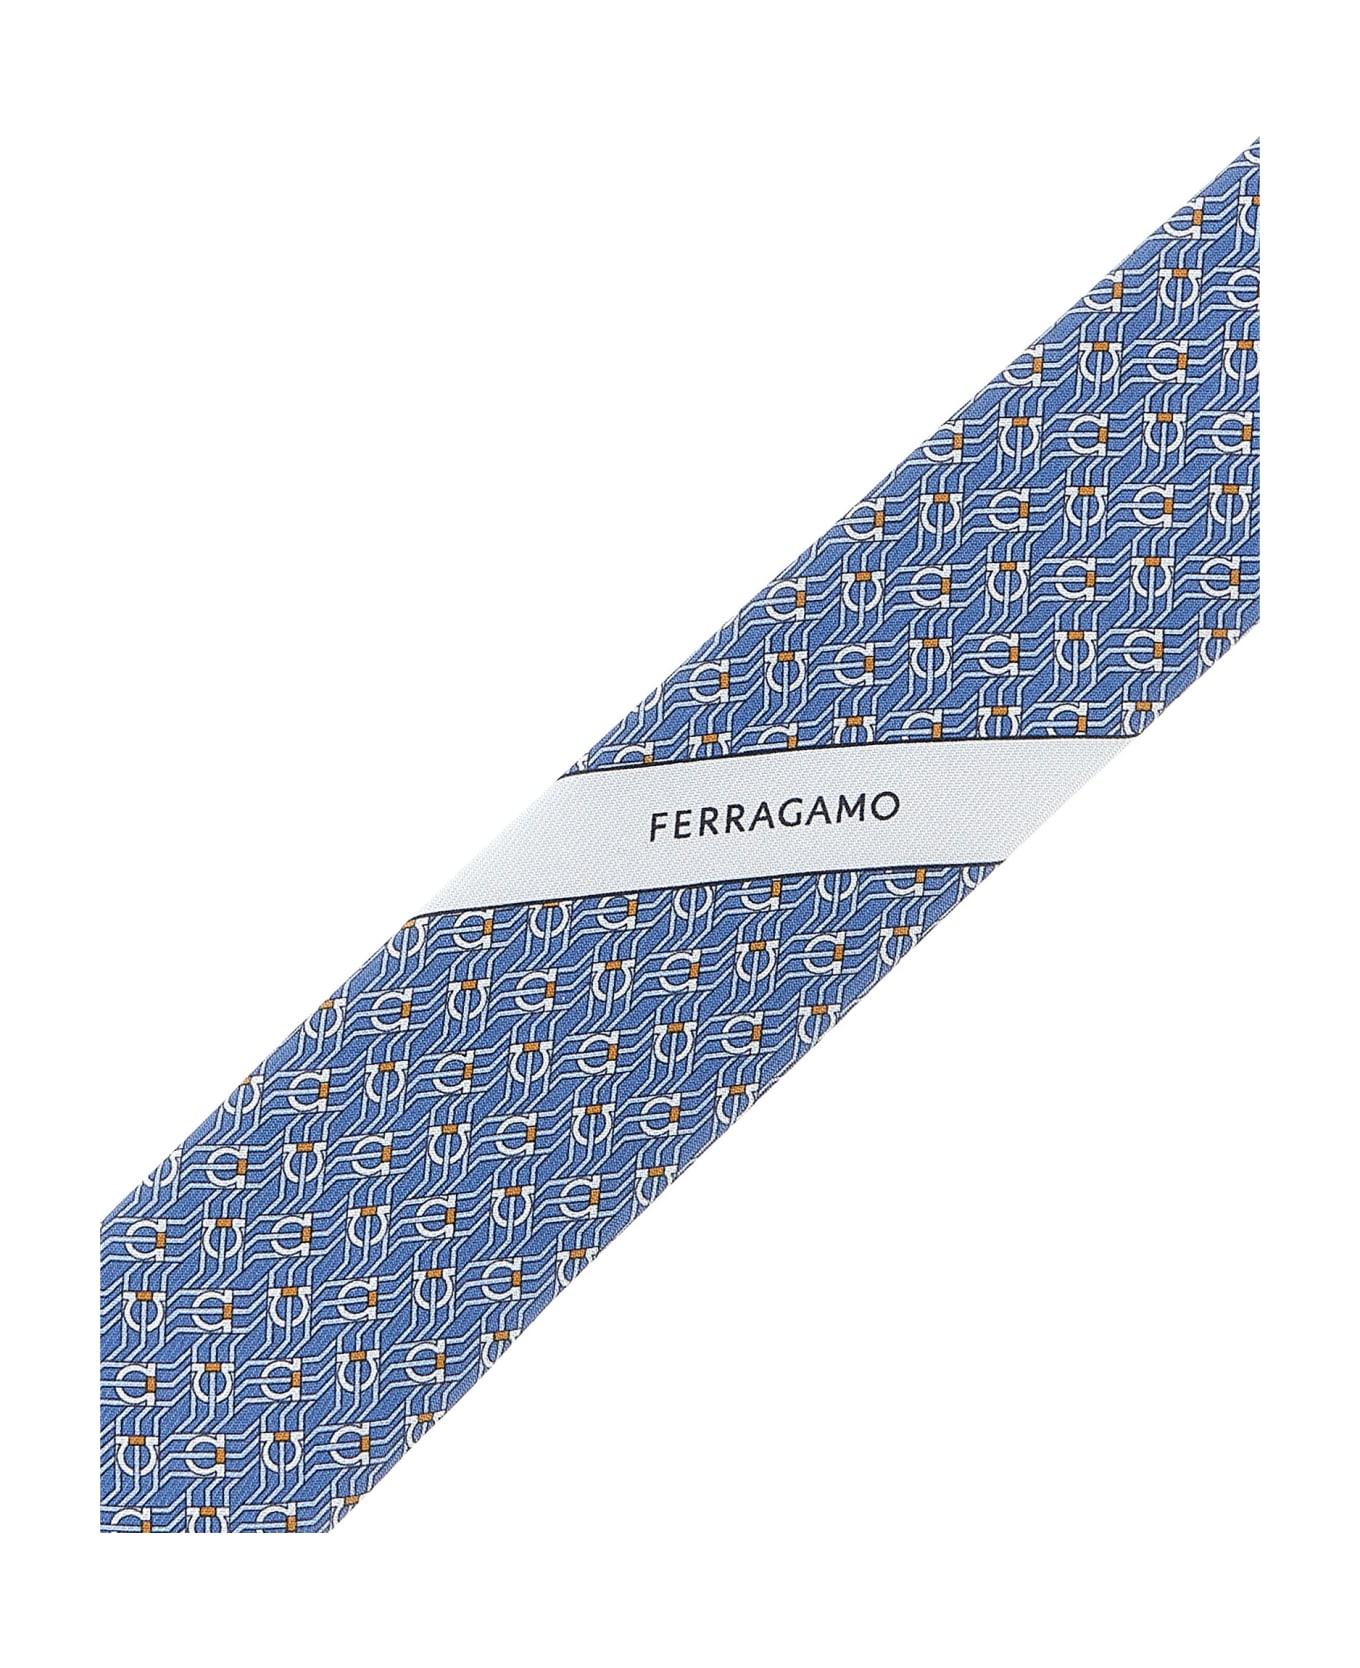 Ferragamo 'tetris' Tie - Gnawed Blue ネクタイ